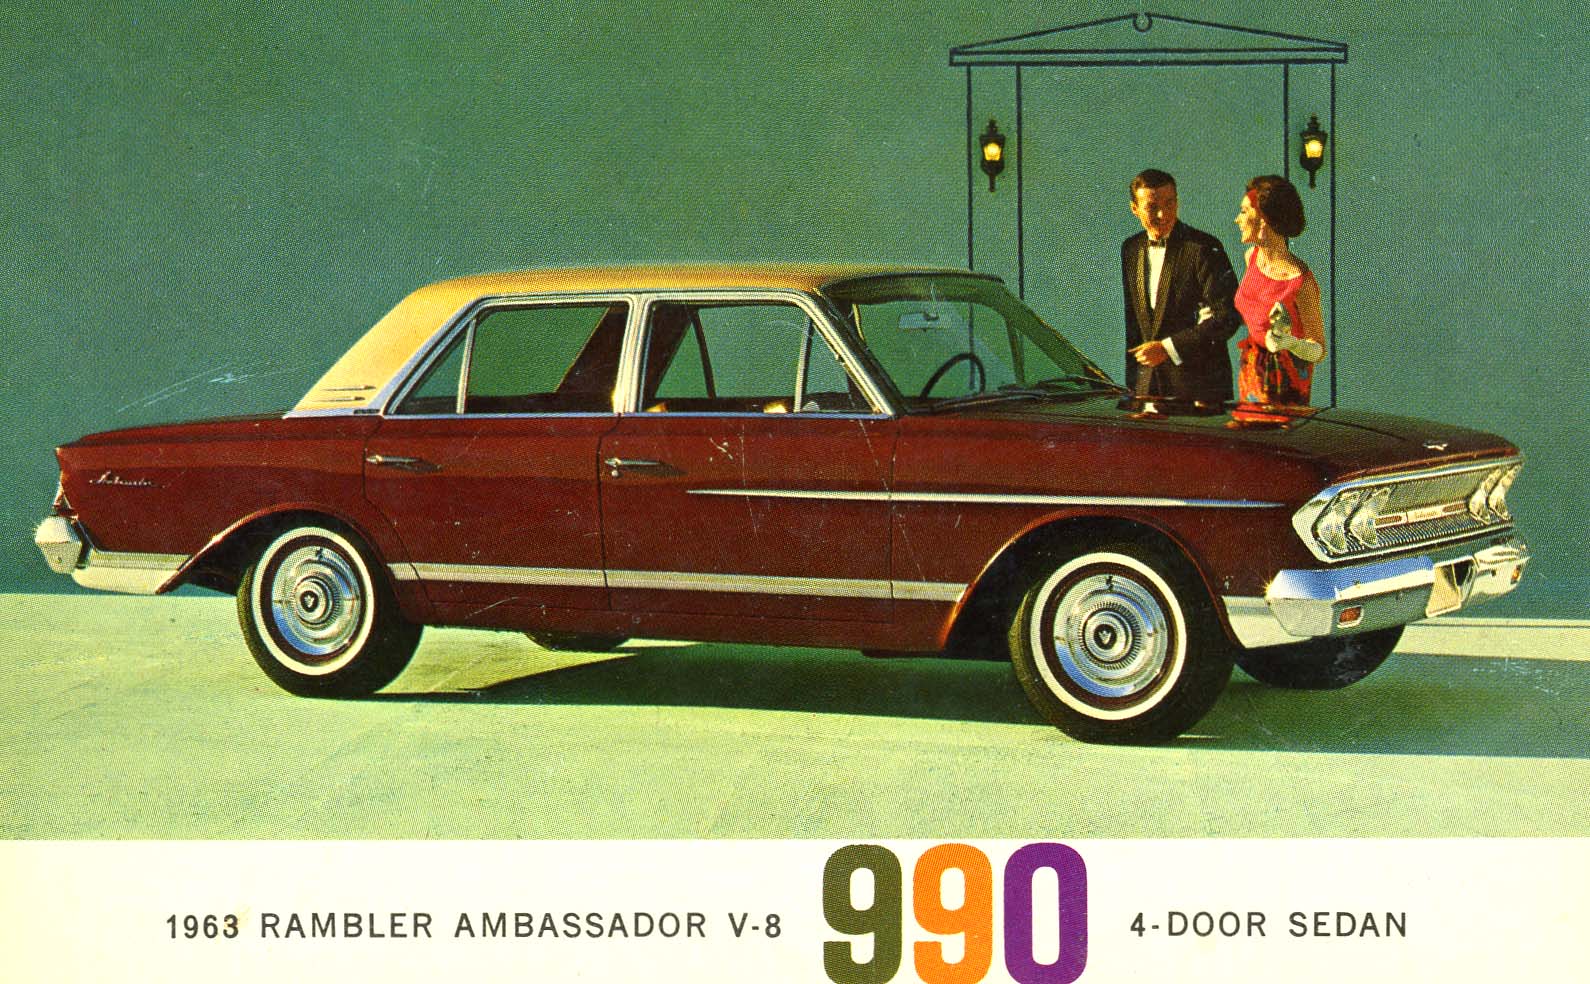 1963 Rambler Ambassador post card | Flickr - Photo Sharing!